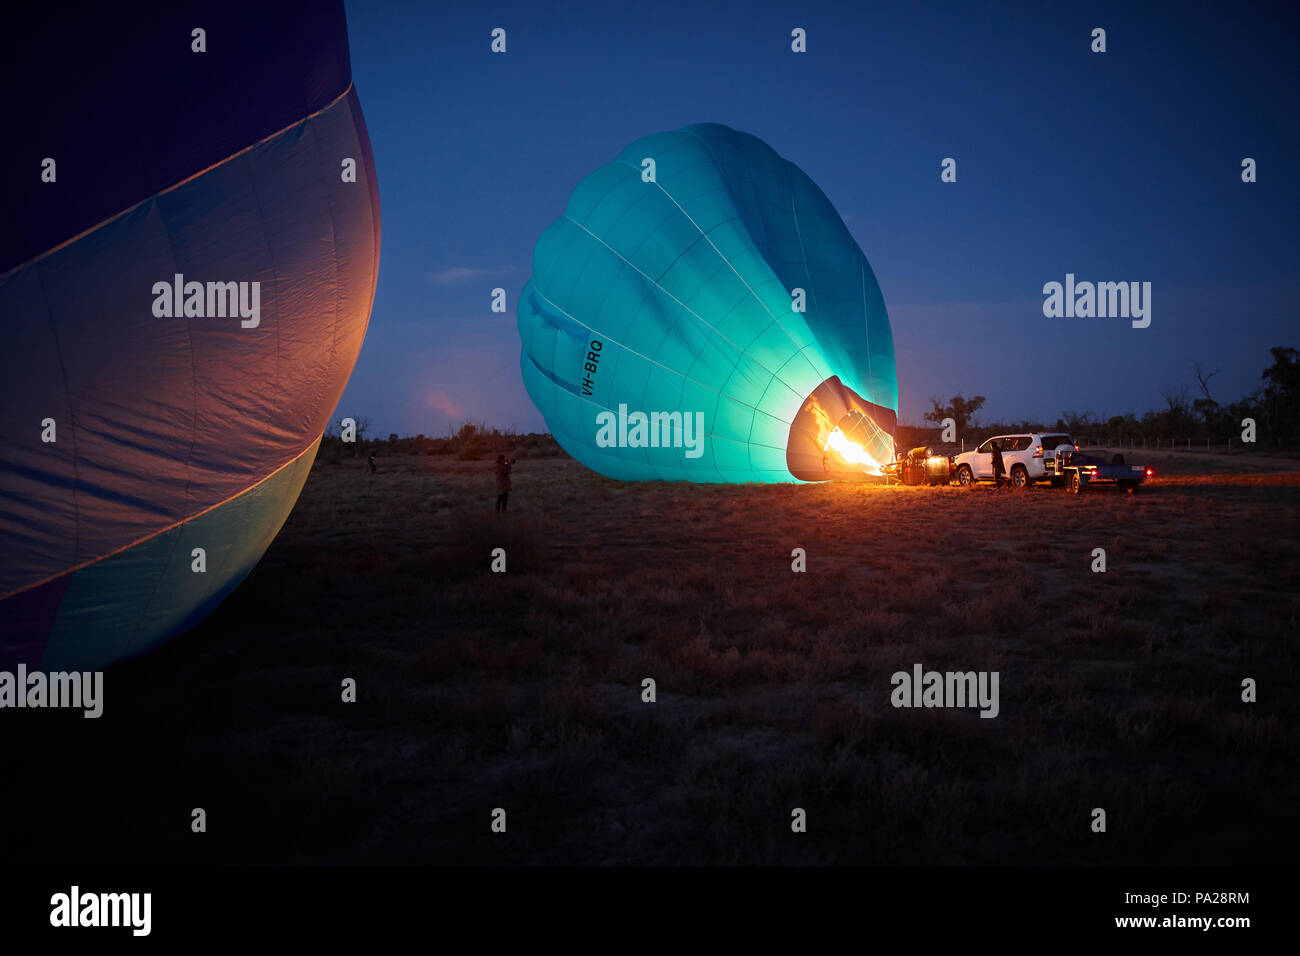 19 luglio 2018, due i palloni ad aria calda di tentare una lunga distanza di volo, avviare da un campo vicino Merbein nel nord ovest di Victoria, Australia. Foto Stock